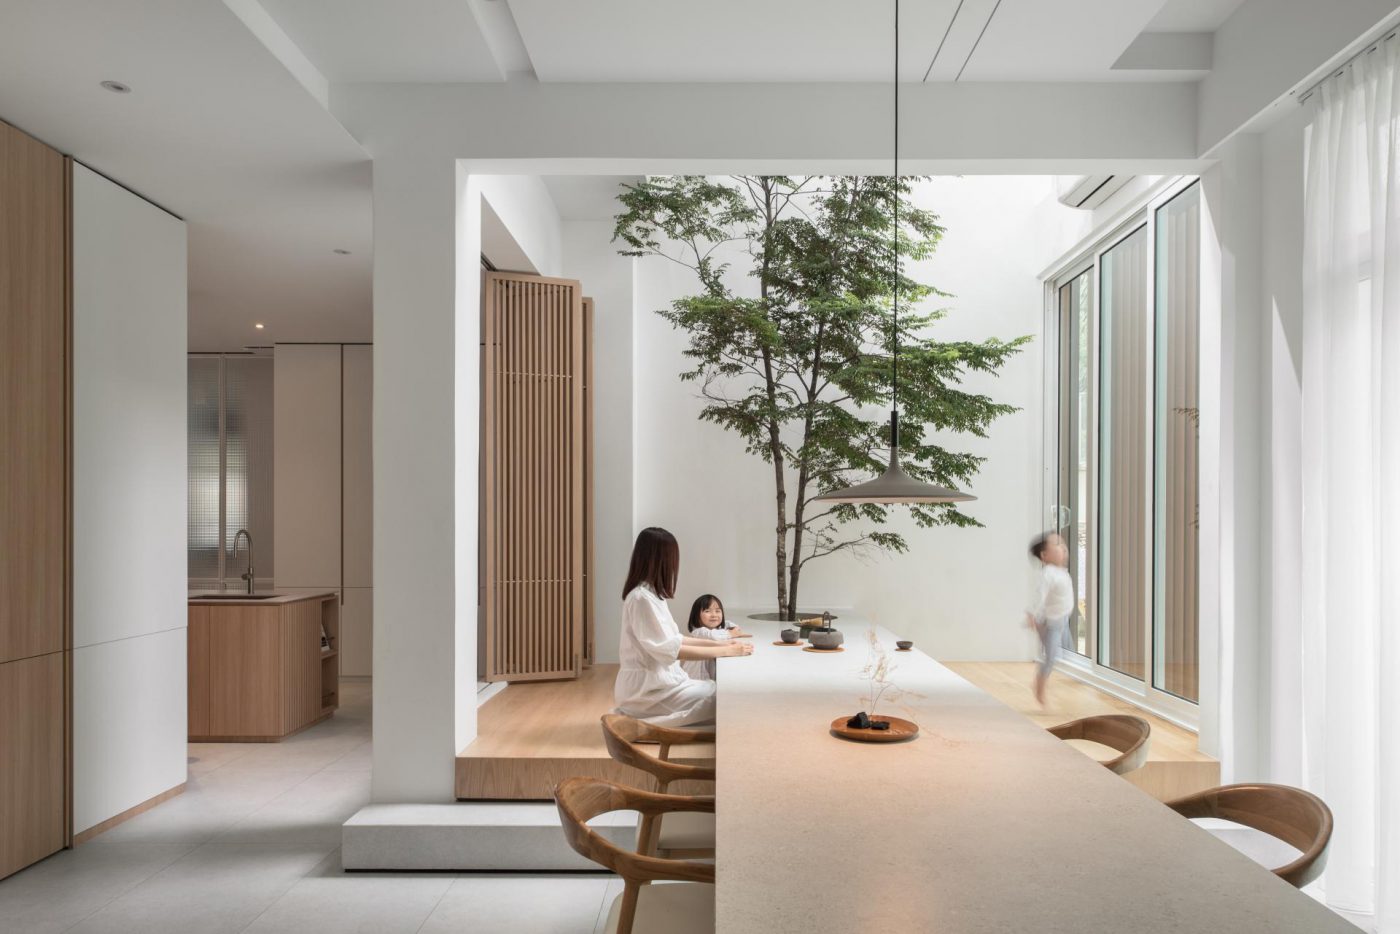 Tận dụng ánh sáng là điều không thể thiếu trong thiết kế nội thất chung cư phong cách tối giản